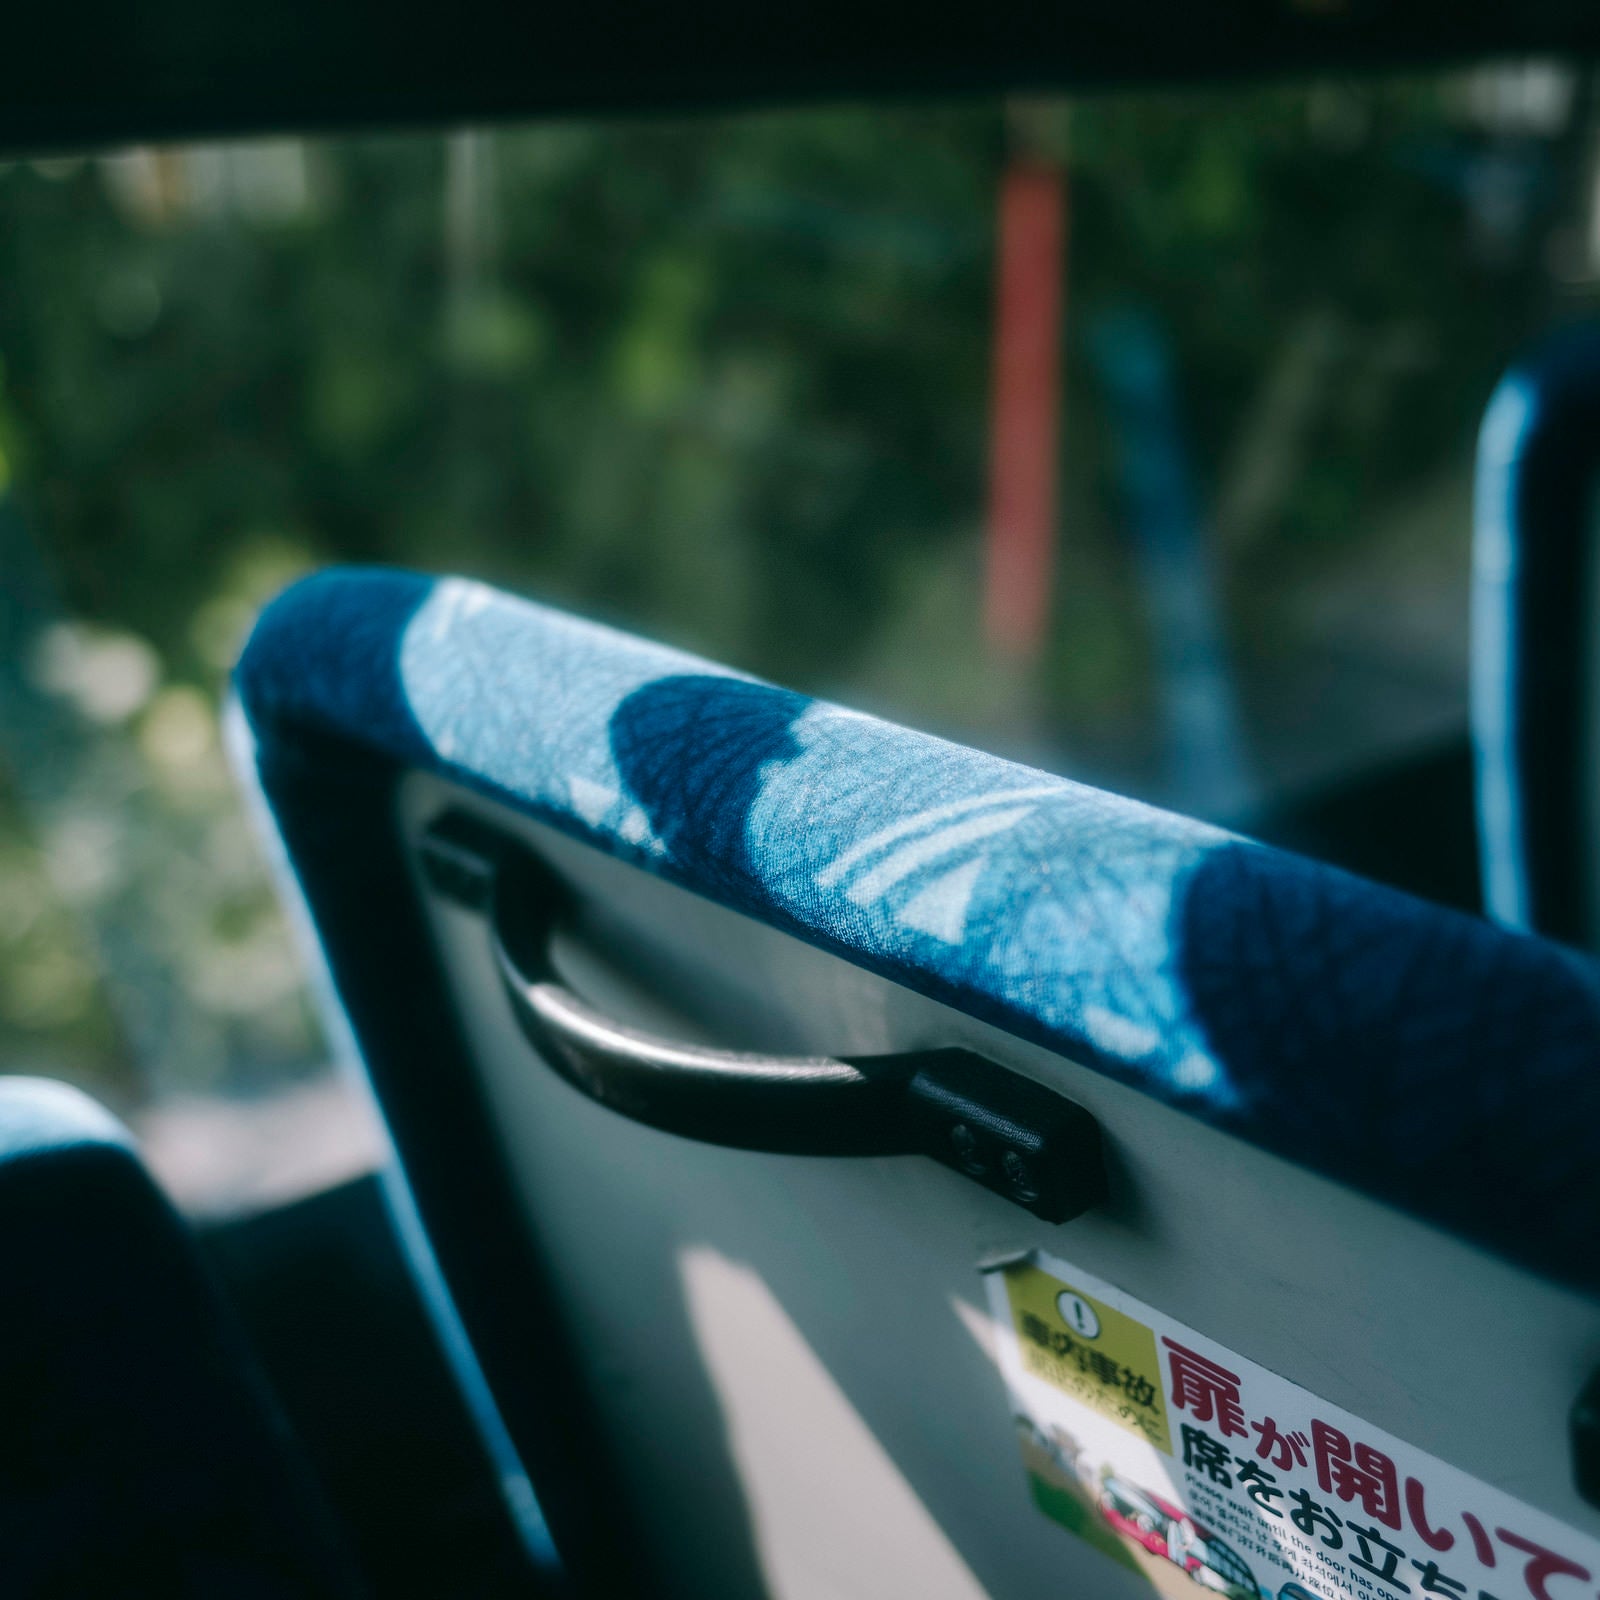 「バスの座席」の写真